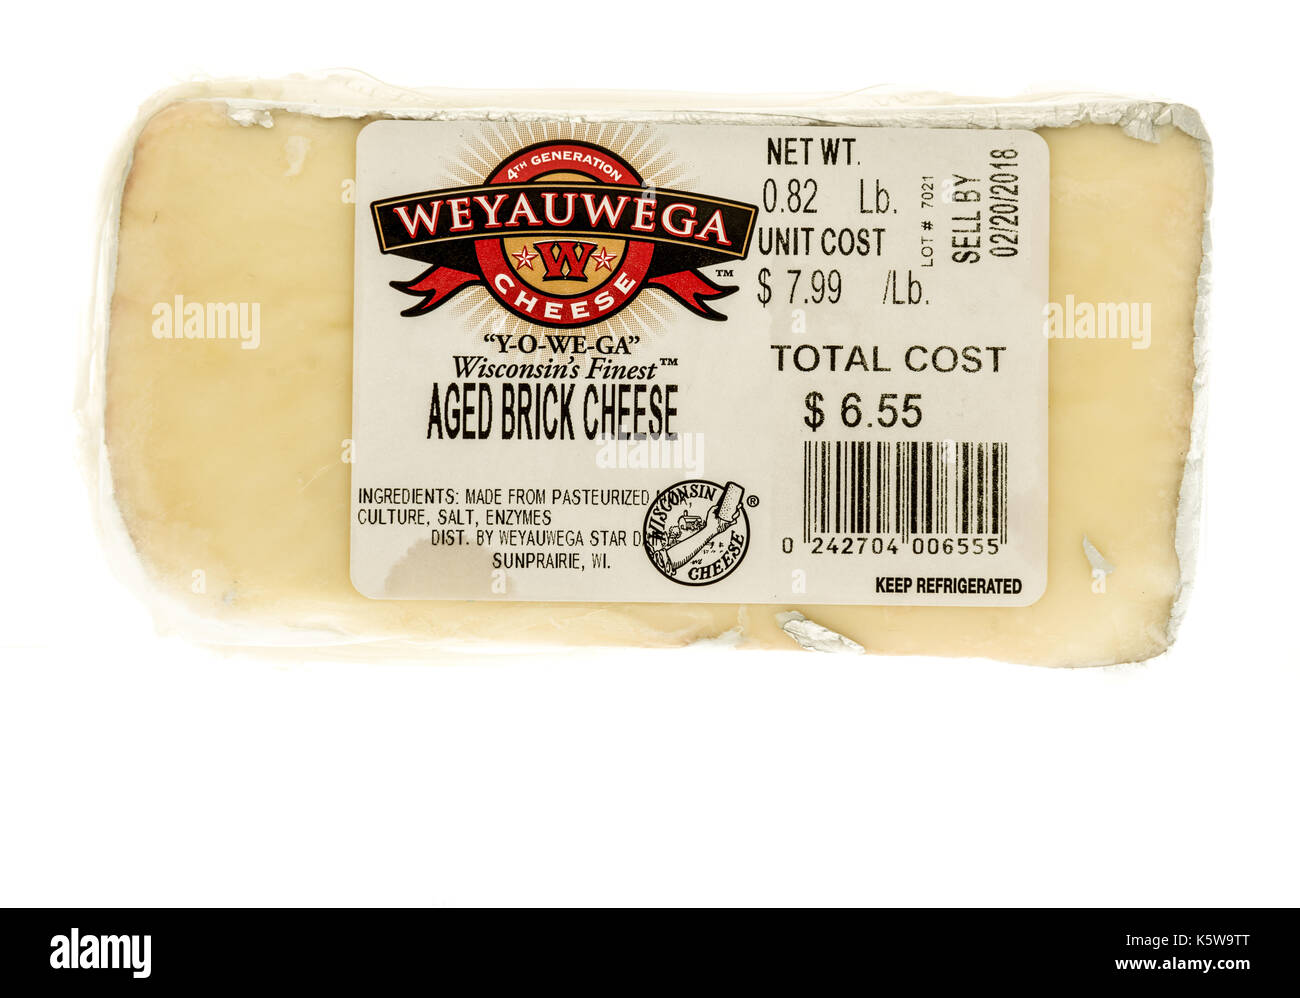 Winneconne, WI - 7. September 2017: ein Paket von Weyauwga alter Ziegel Käse auf einem isolierten Hintergrund. Stockfoto